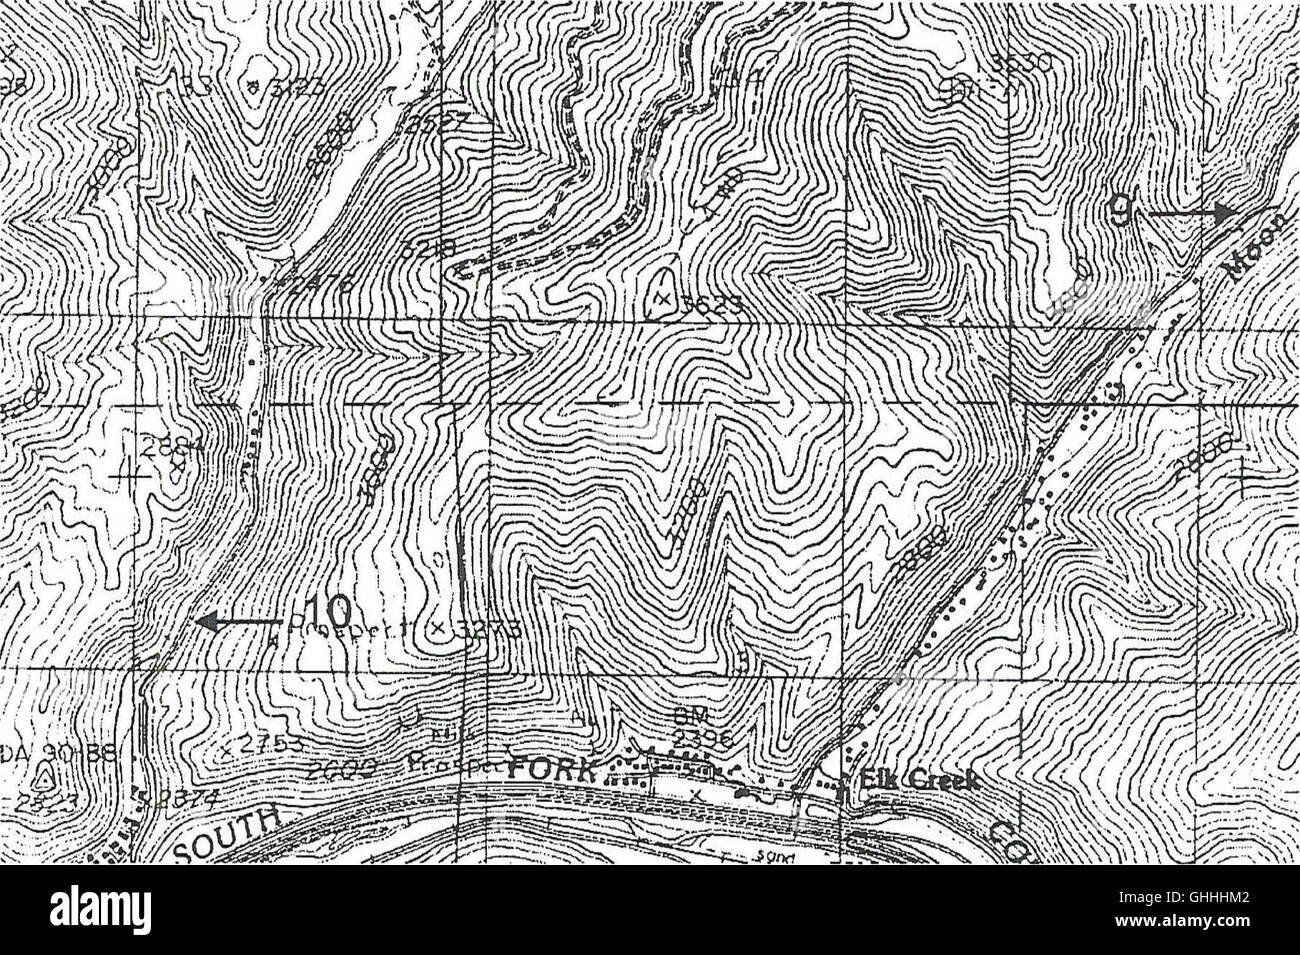 Amphibians of the Coeur d'Alene basin - a survey of Bureau of Land Management lands (1998) Stock Photo